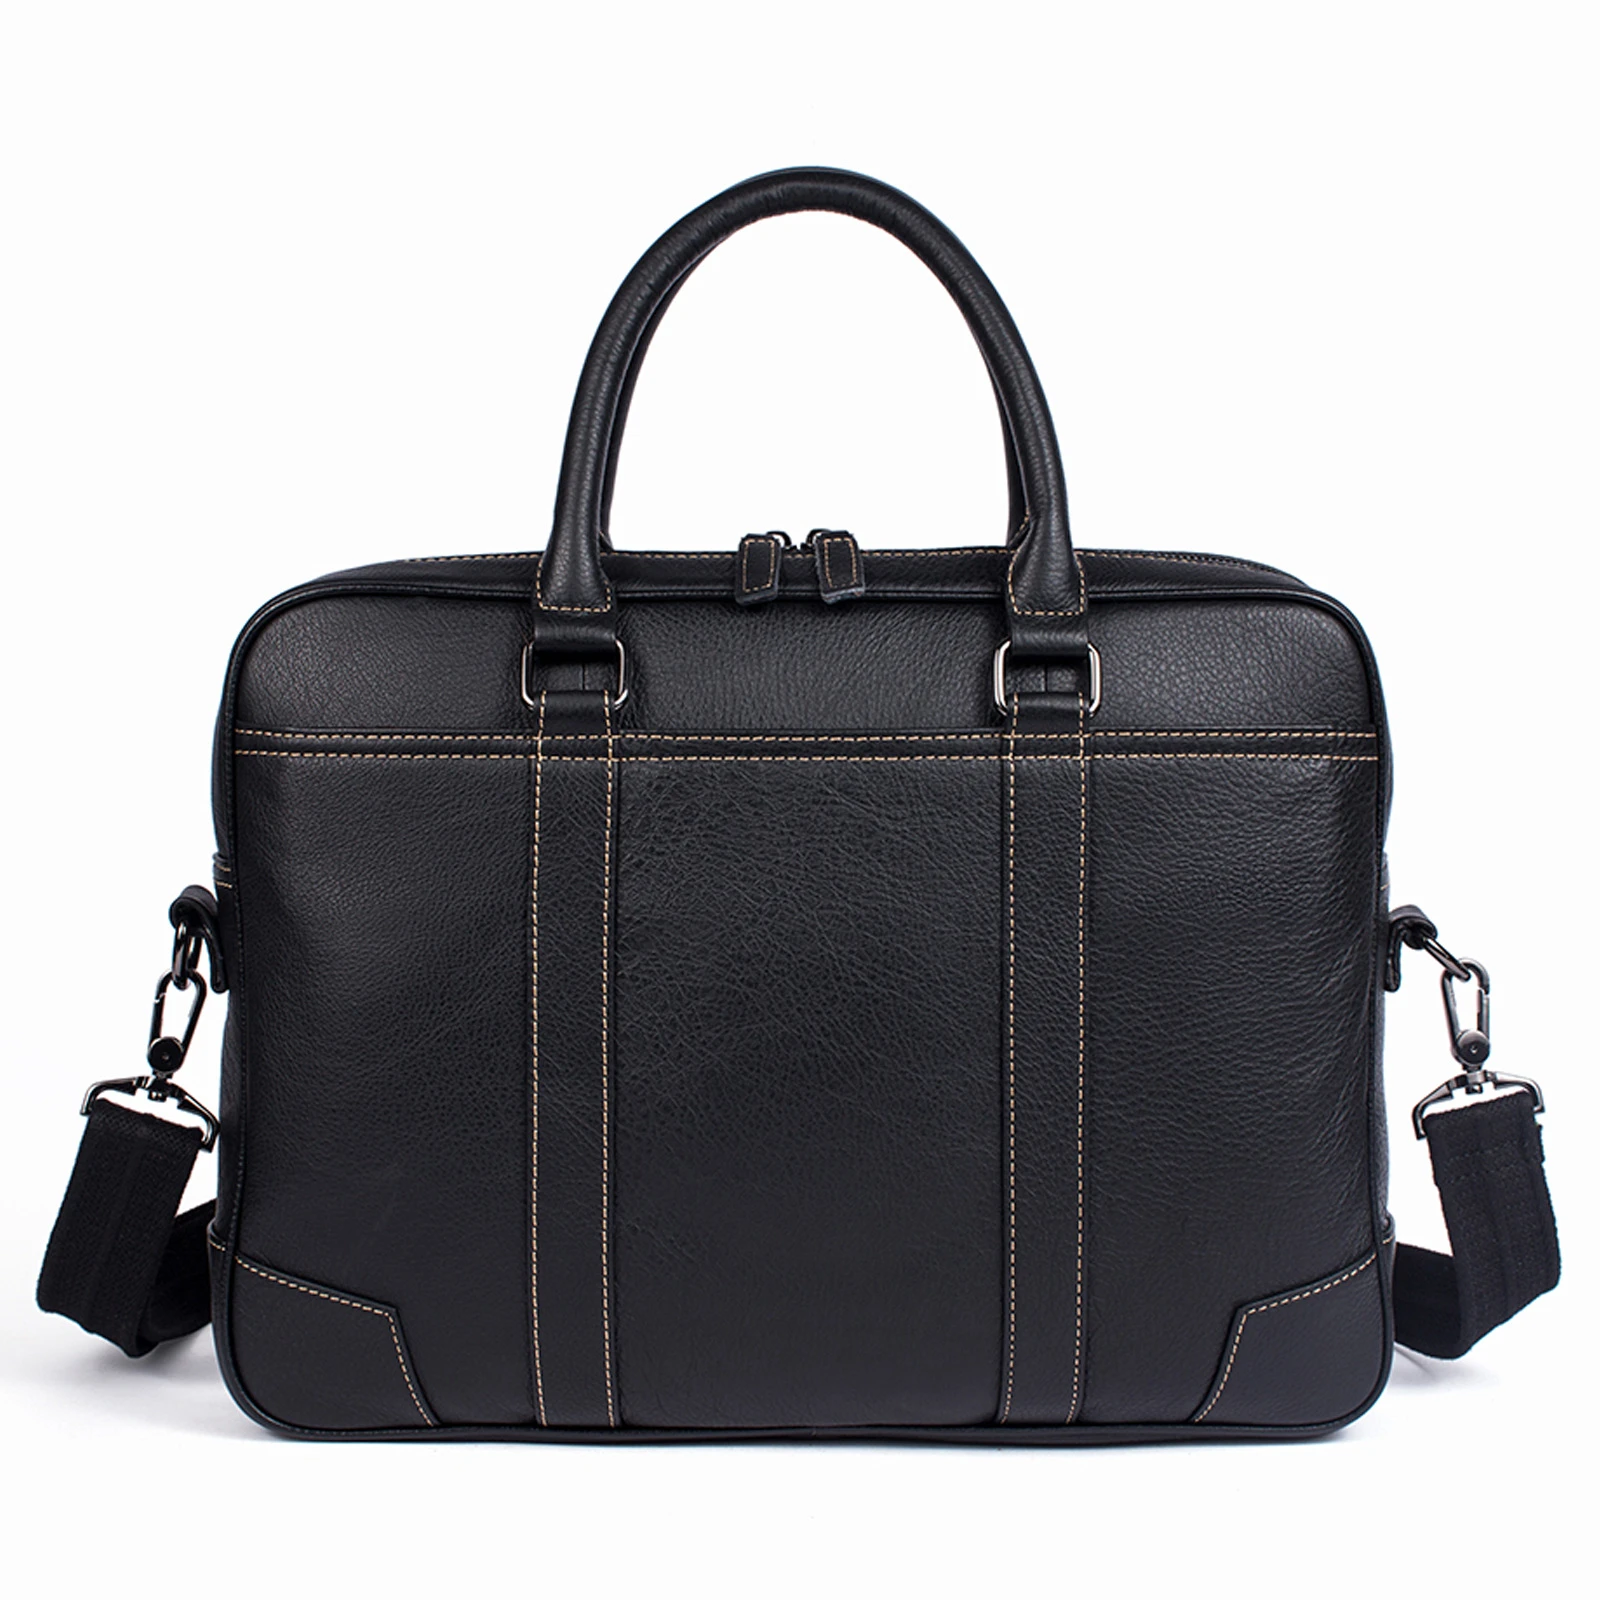 Men's Bag Leather 14 Inch Laptop Bag Briefcase Messenger Bag Leather Business A4 File Bag Large Capacity Business Travel Handbag